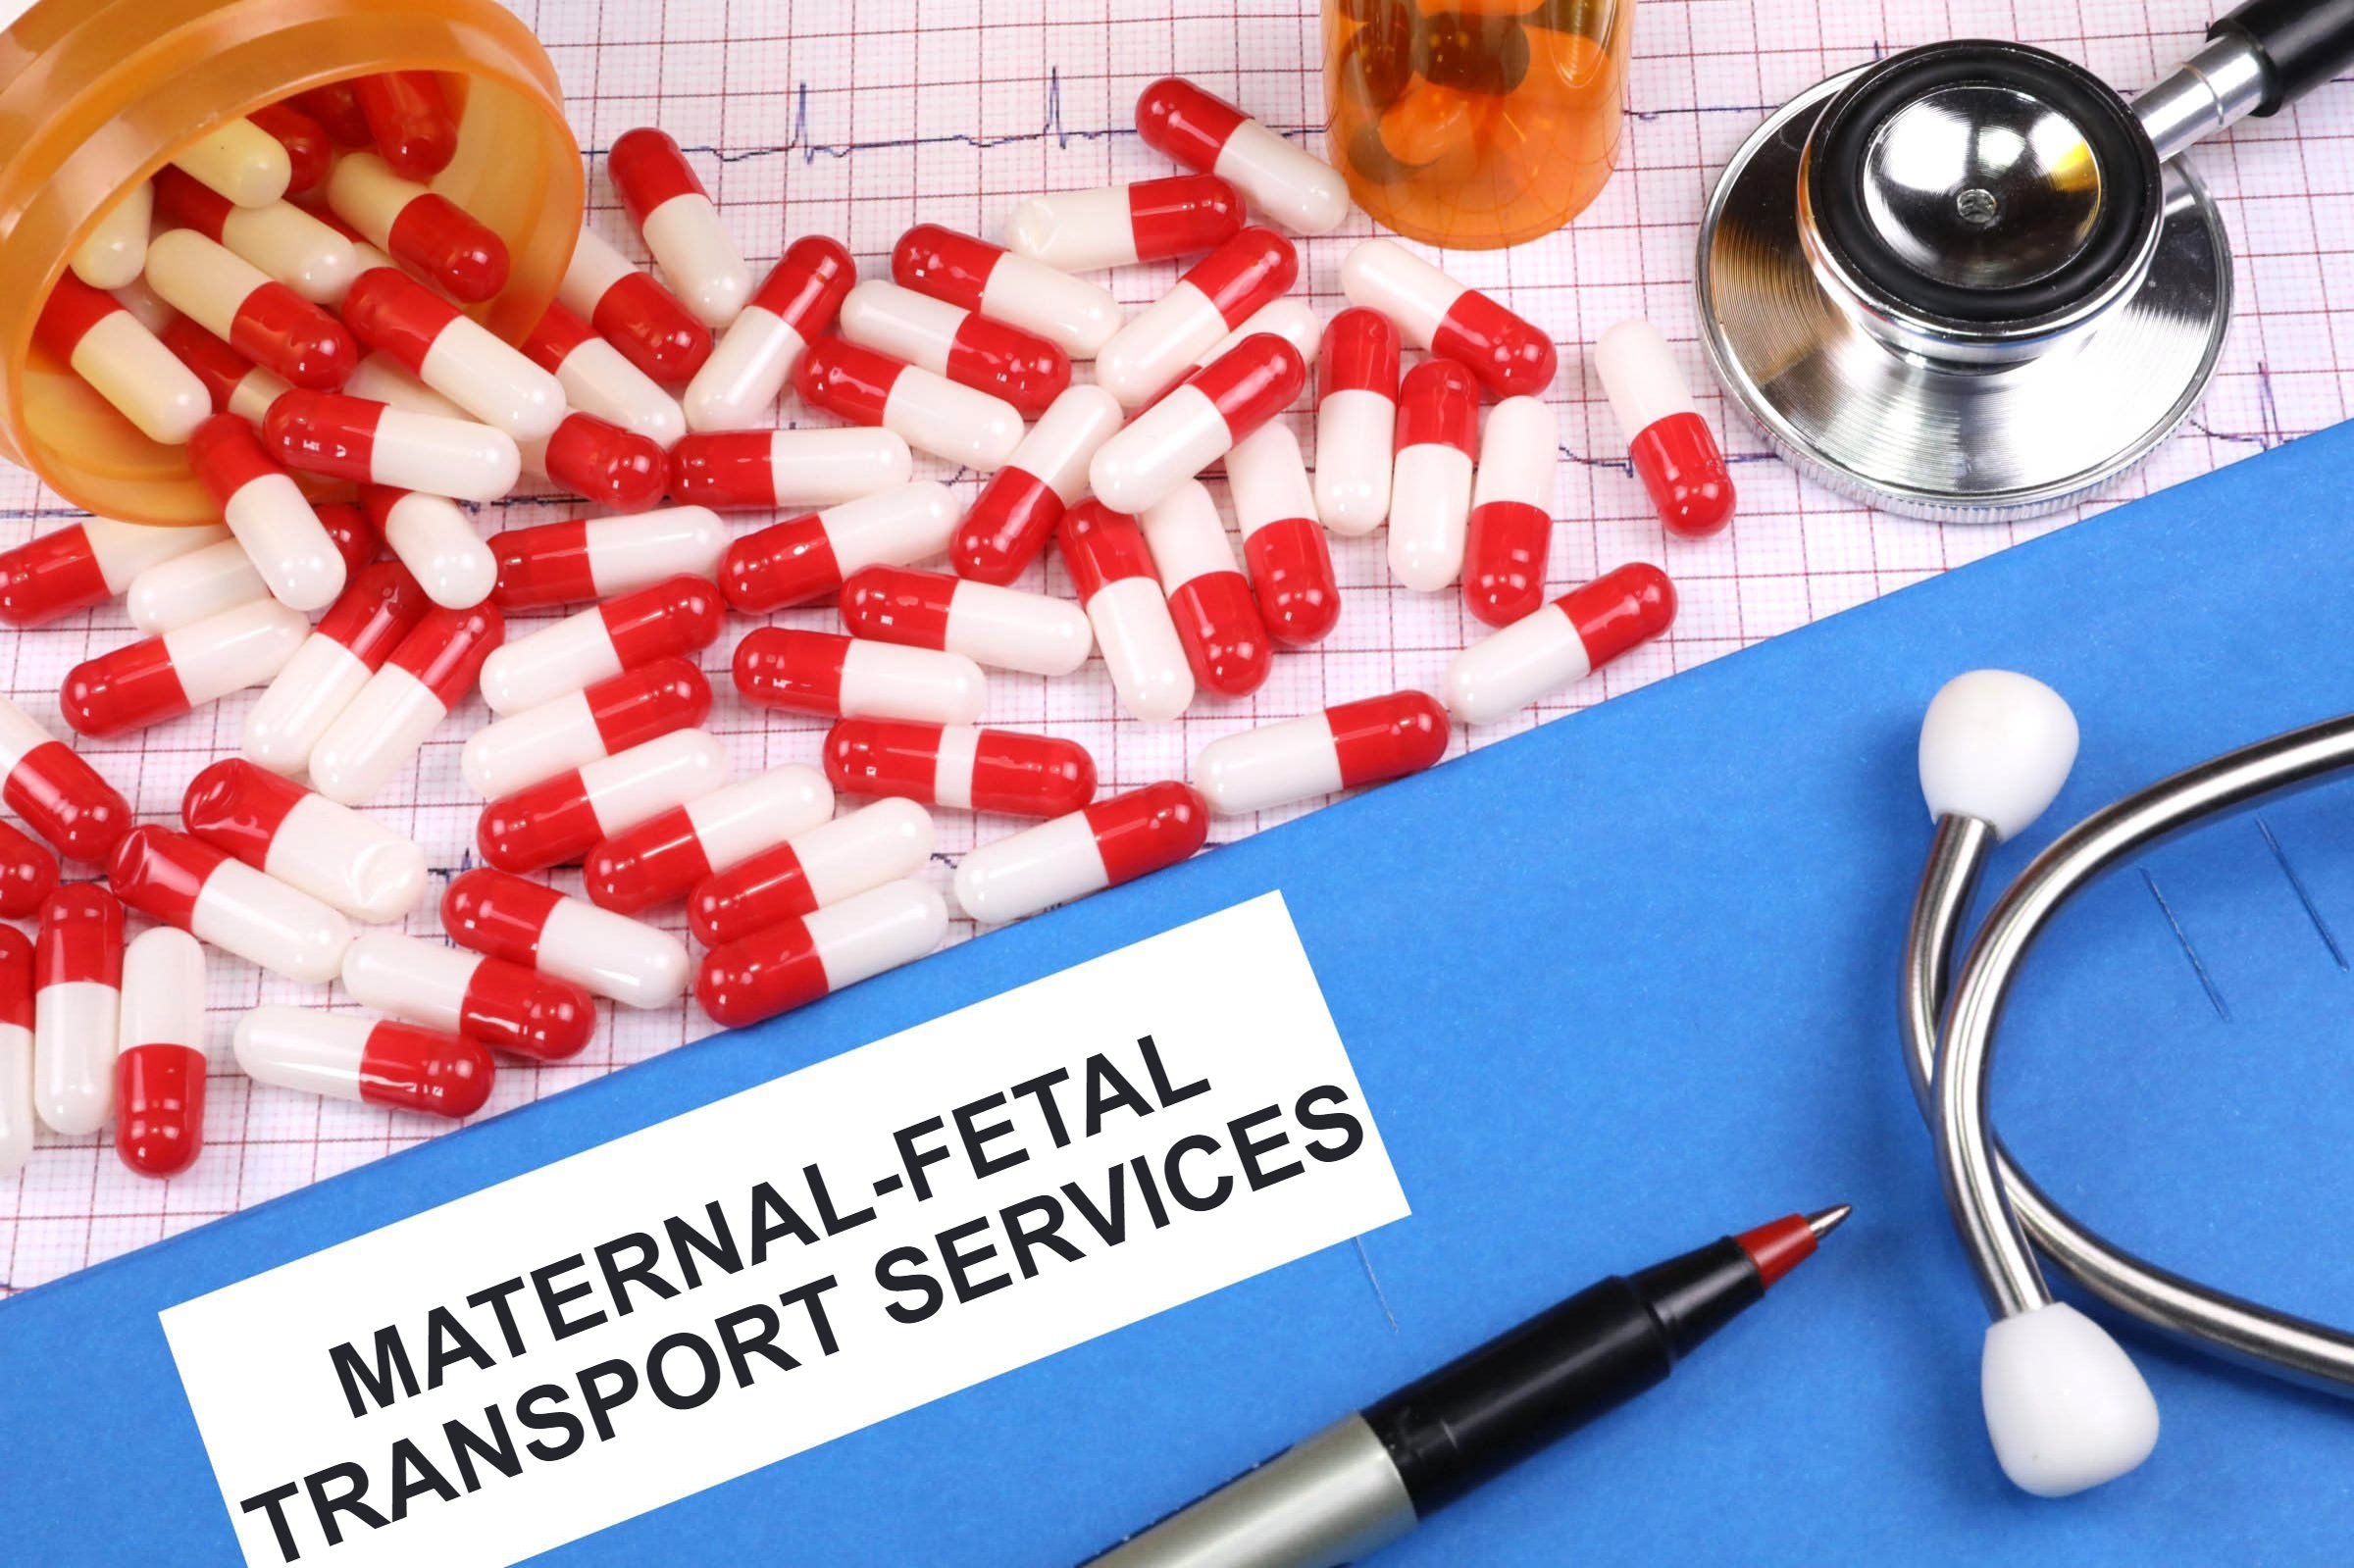 maternal fetal transport services